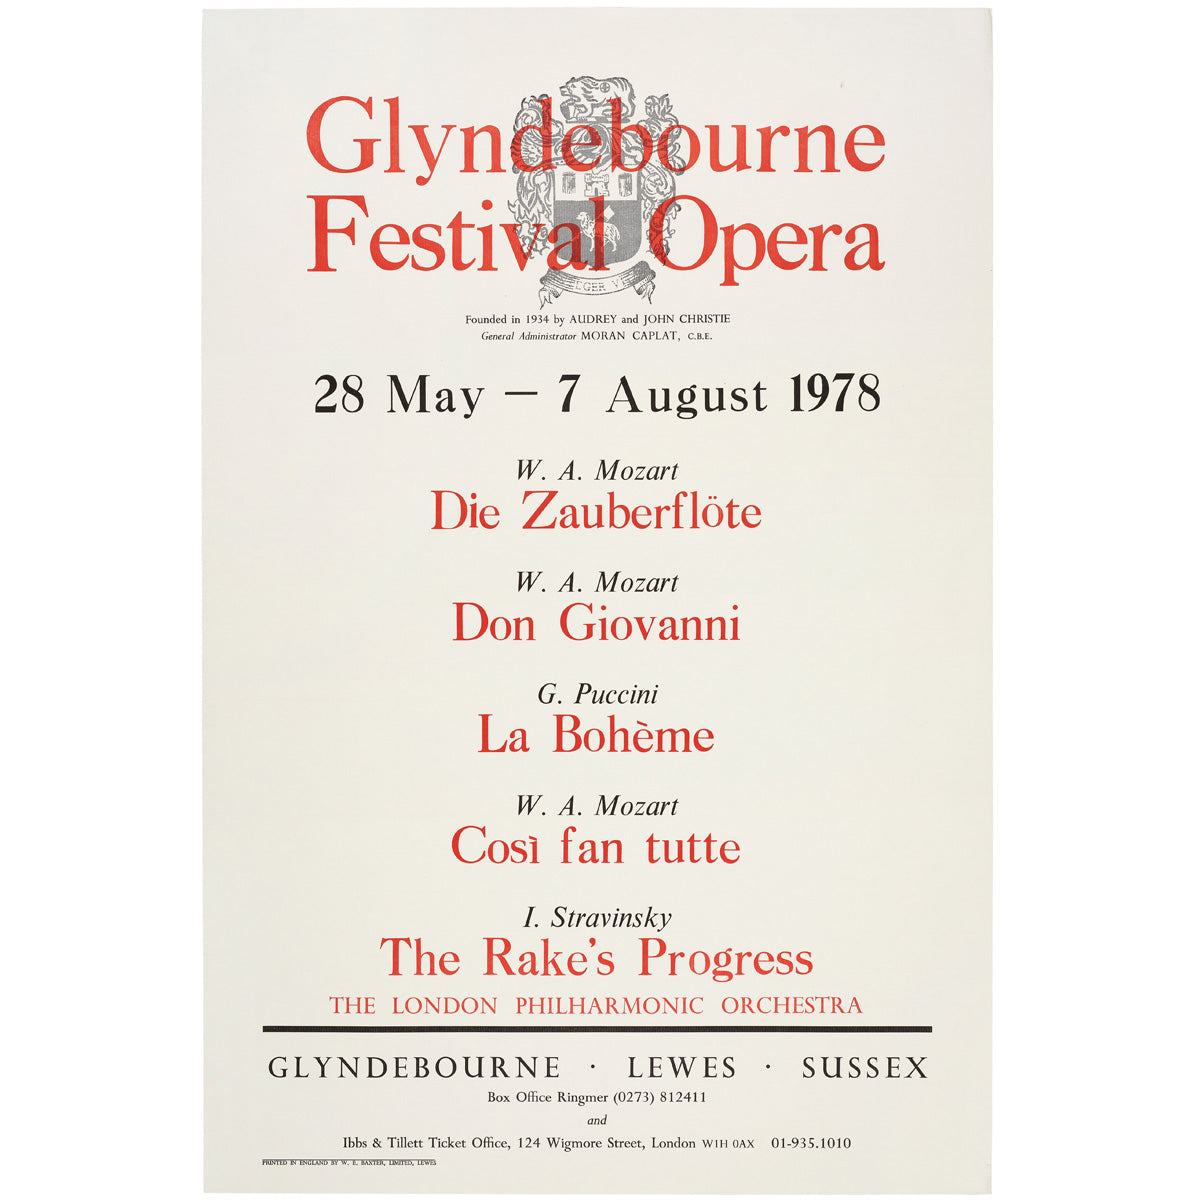 Glyndebourne Festival Opera 1978 Poster Glyndebourne Shop